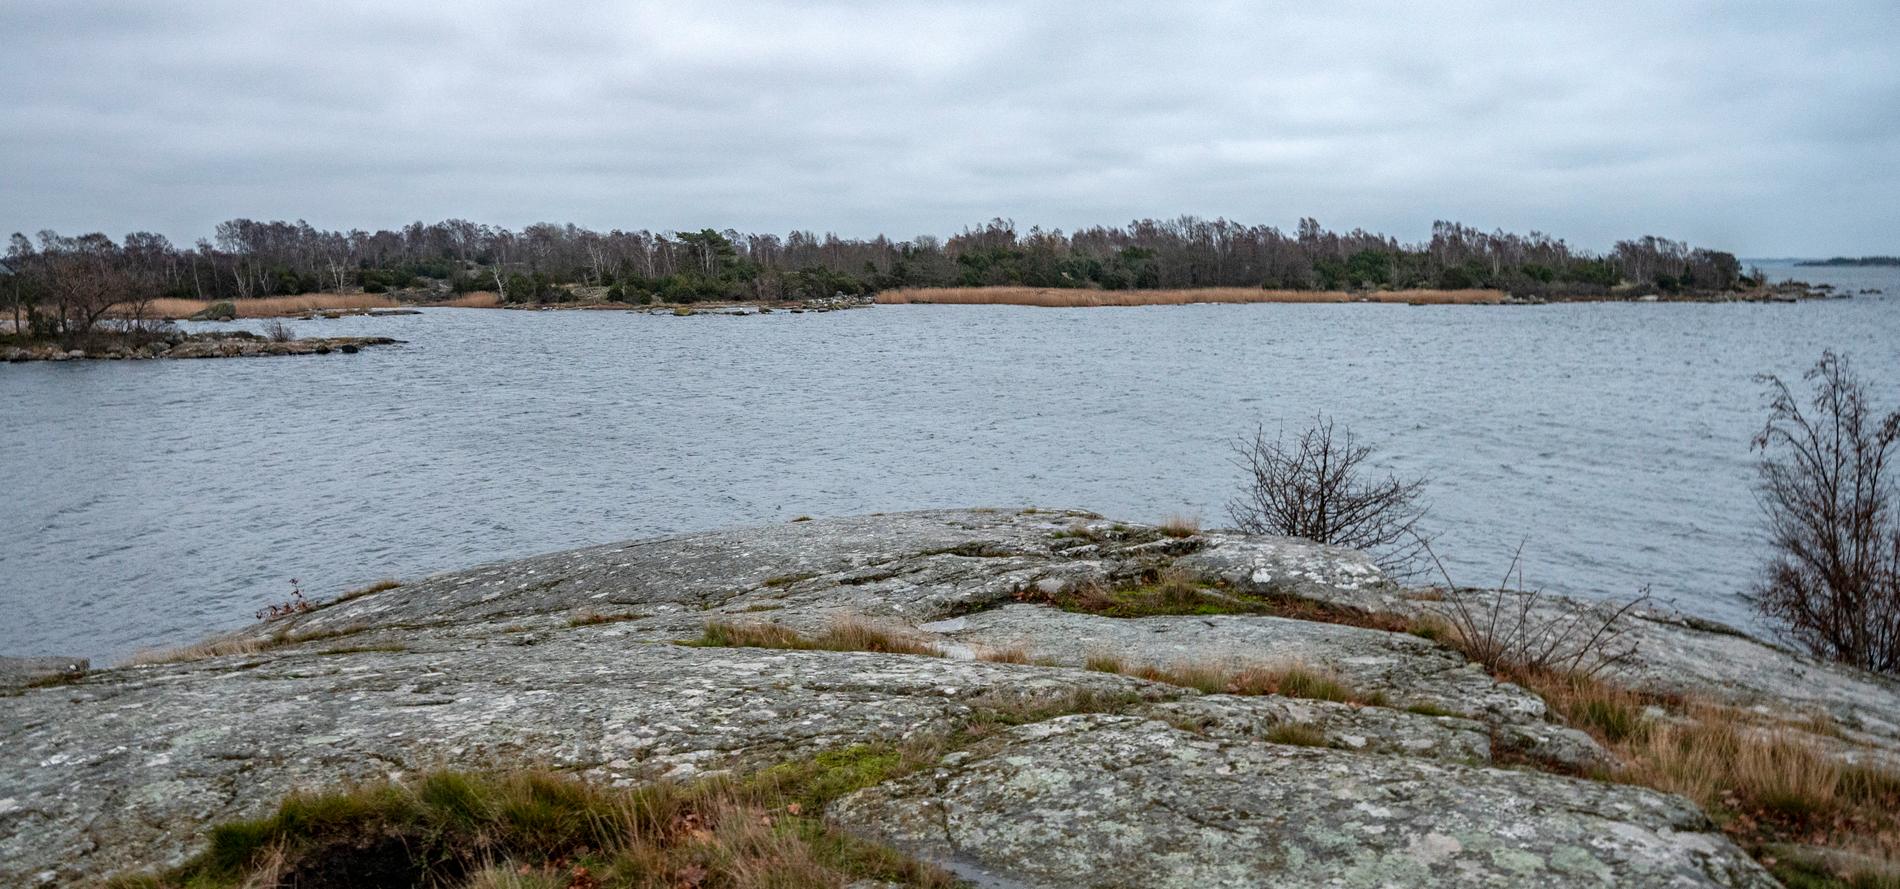 Ålbeståndet i Sverige är svagt, och för att få fiska måste man ha särskilt tillstånd. Det hade inte PM Nilsson när han drog upp ål i Karlskrona skärgård.